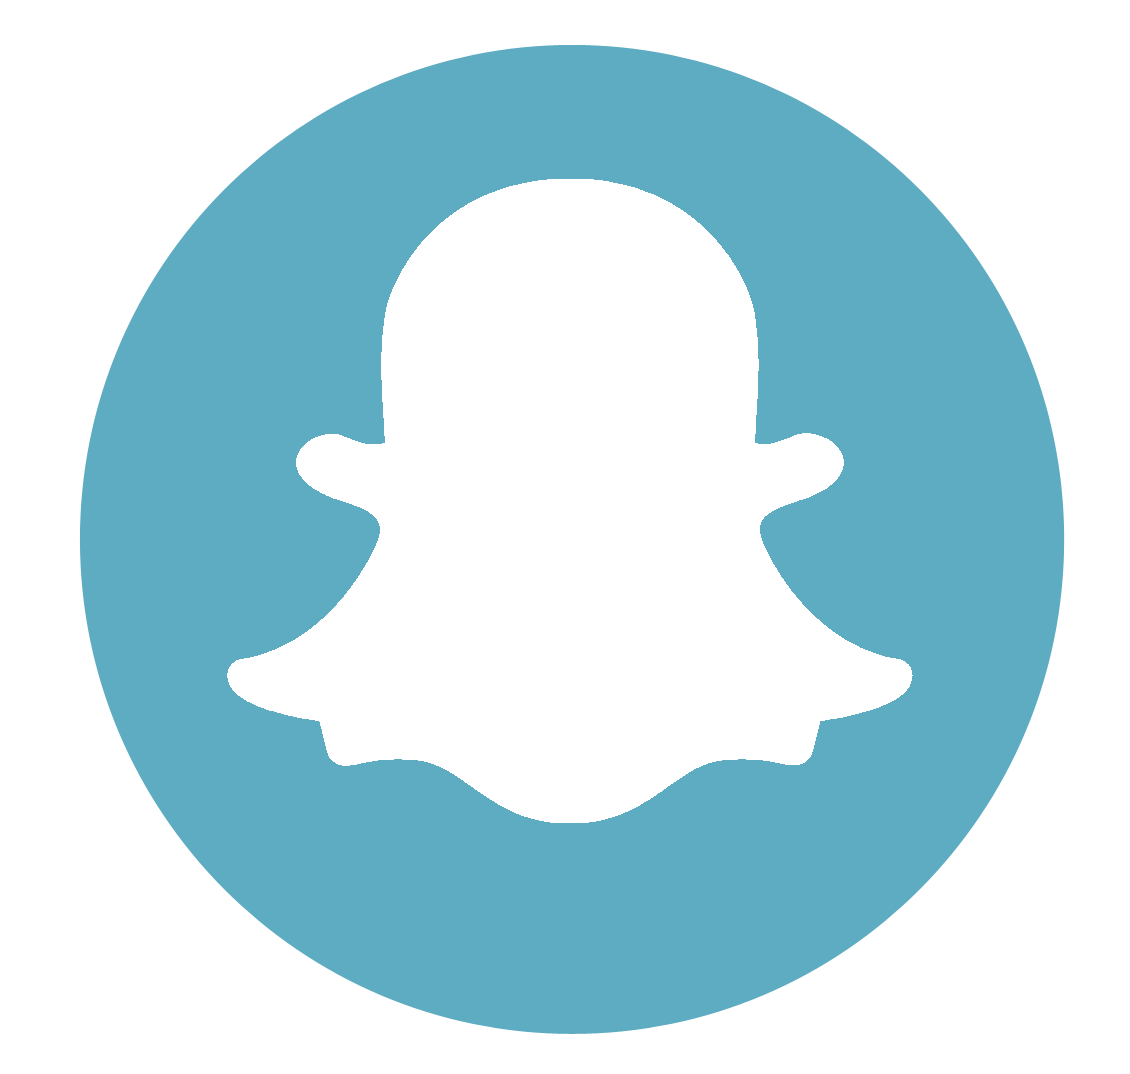 Icons Media Snapchat Computer Social Logo PNG Image